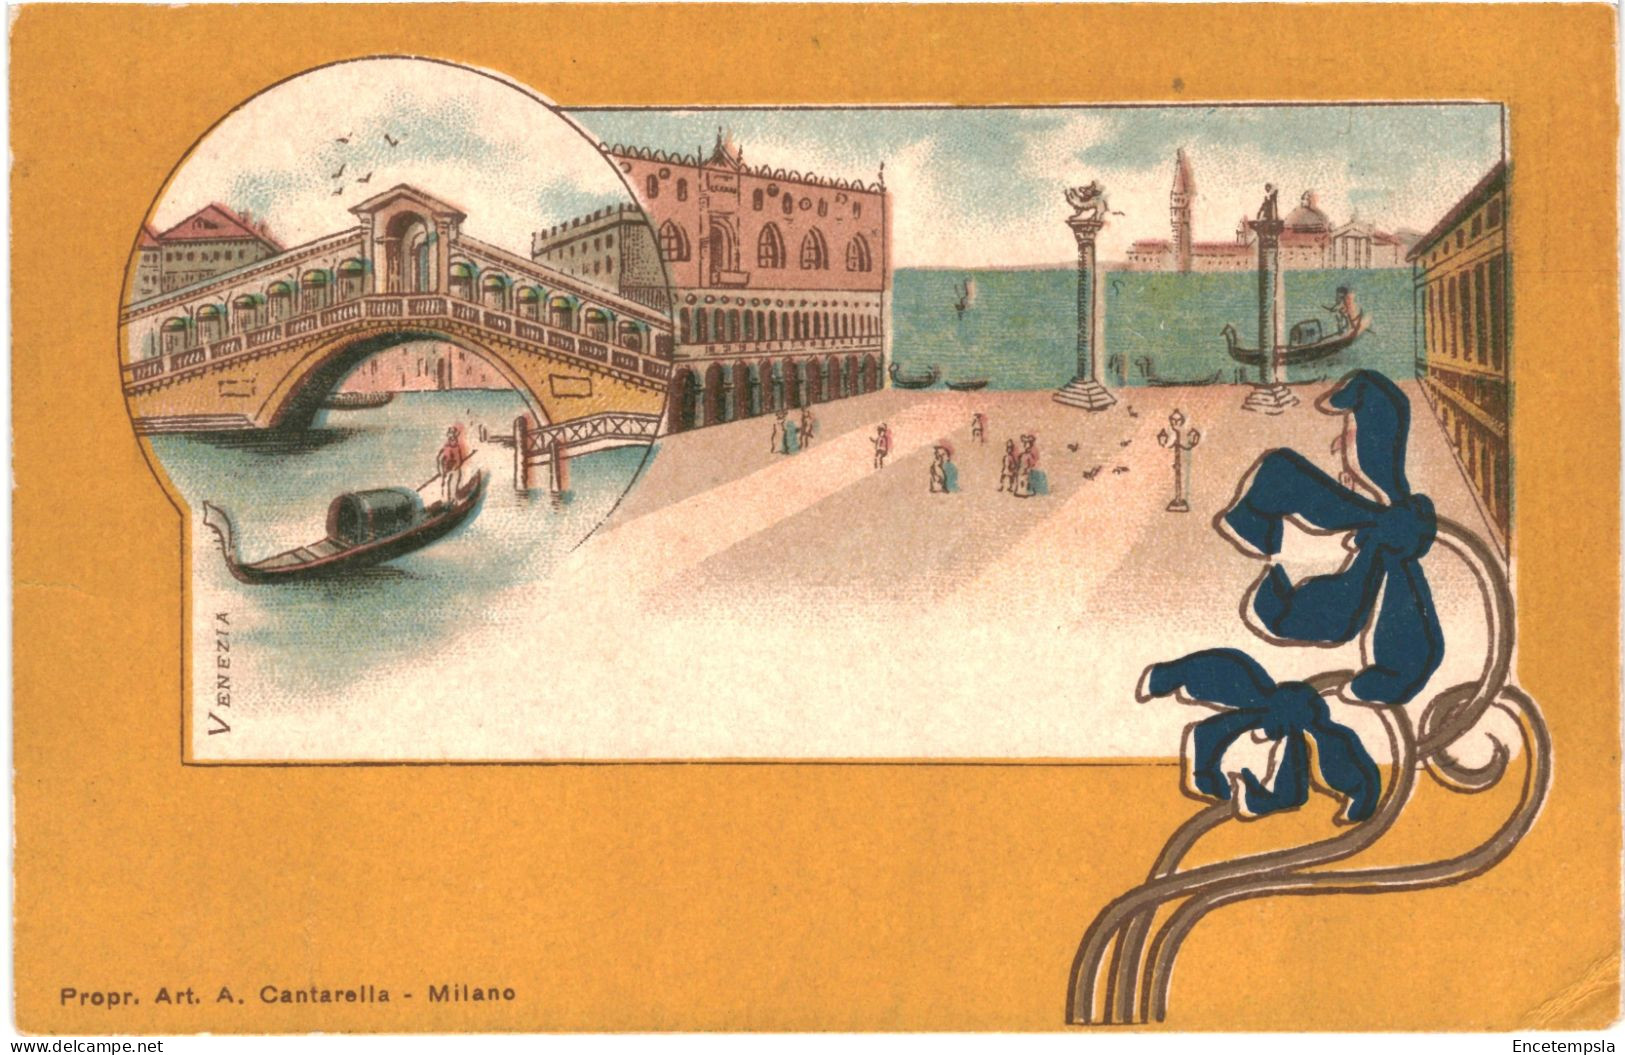 CPA Carte Postale  Italie Venezia Illustration    VM80181ok - Venezia (Venedig)